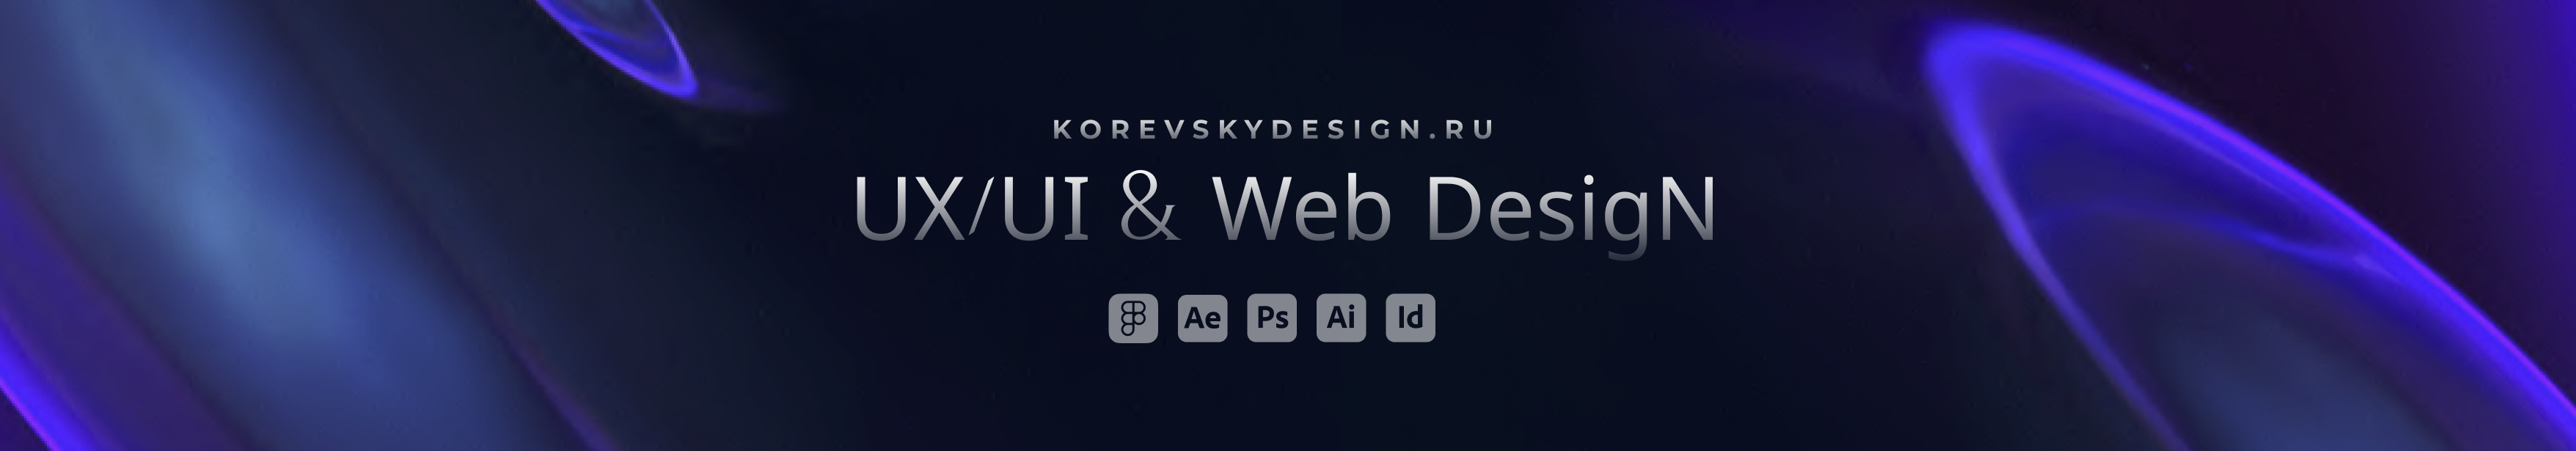 Profil-Banner von Anna Korevskaya